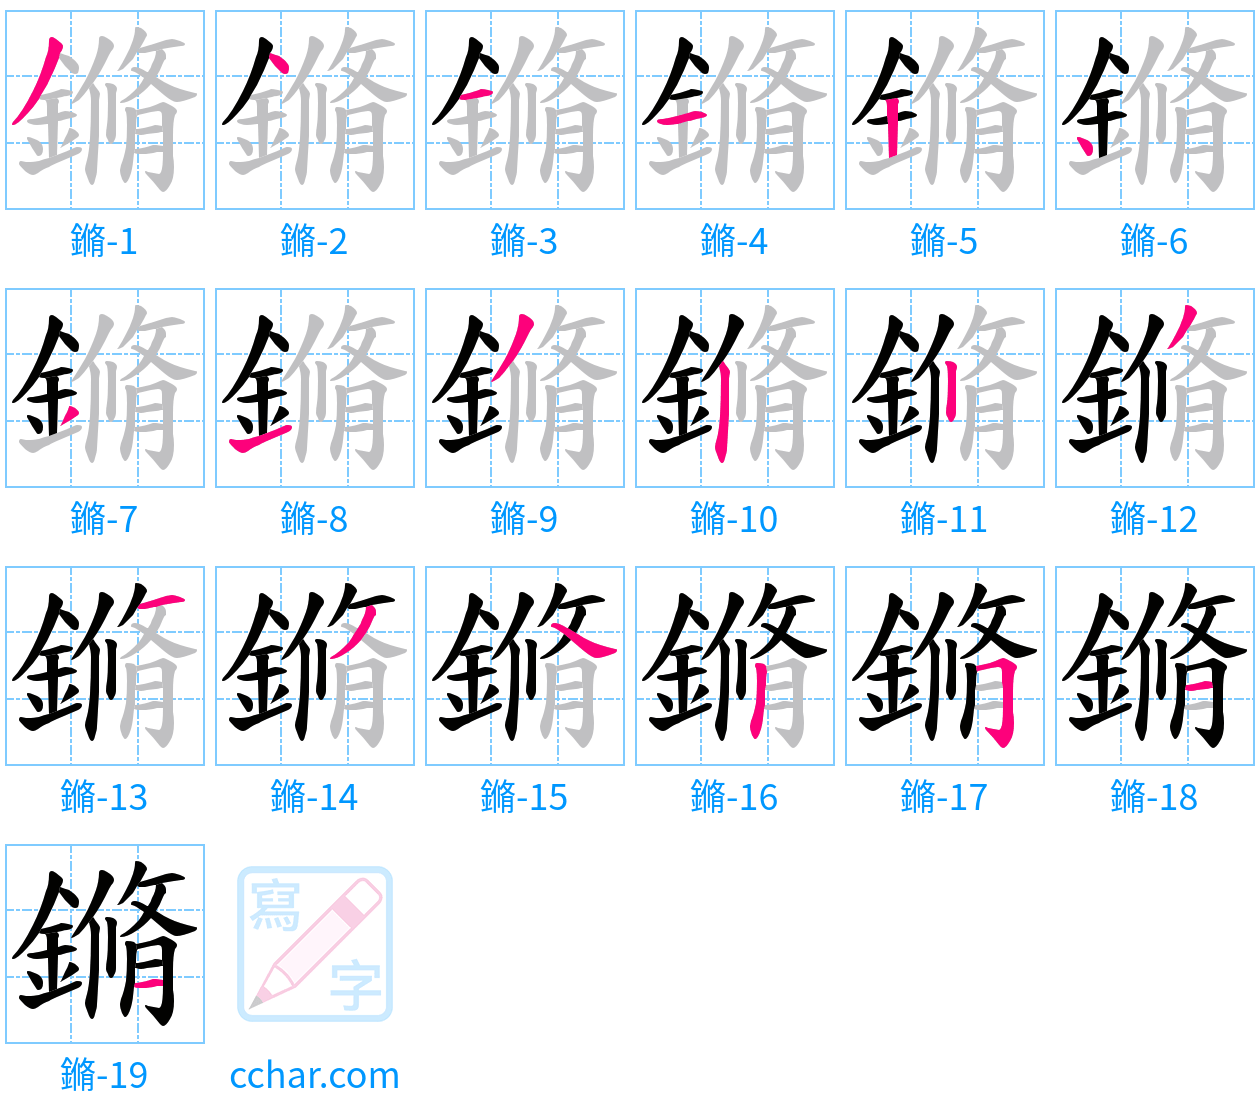 鏅 stroke order step-by-step diagram